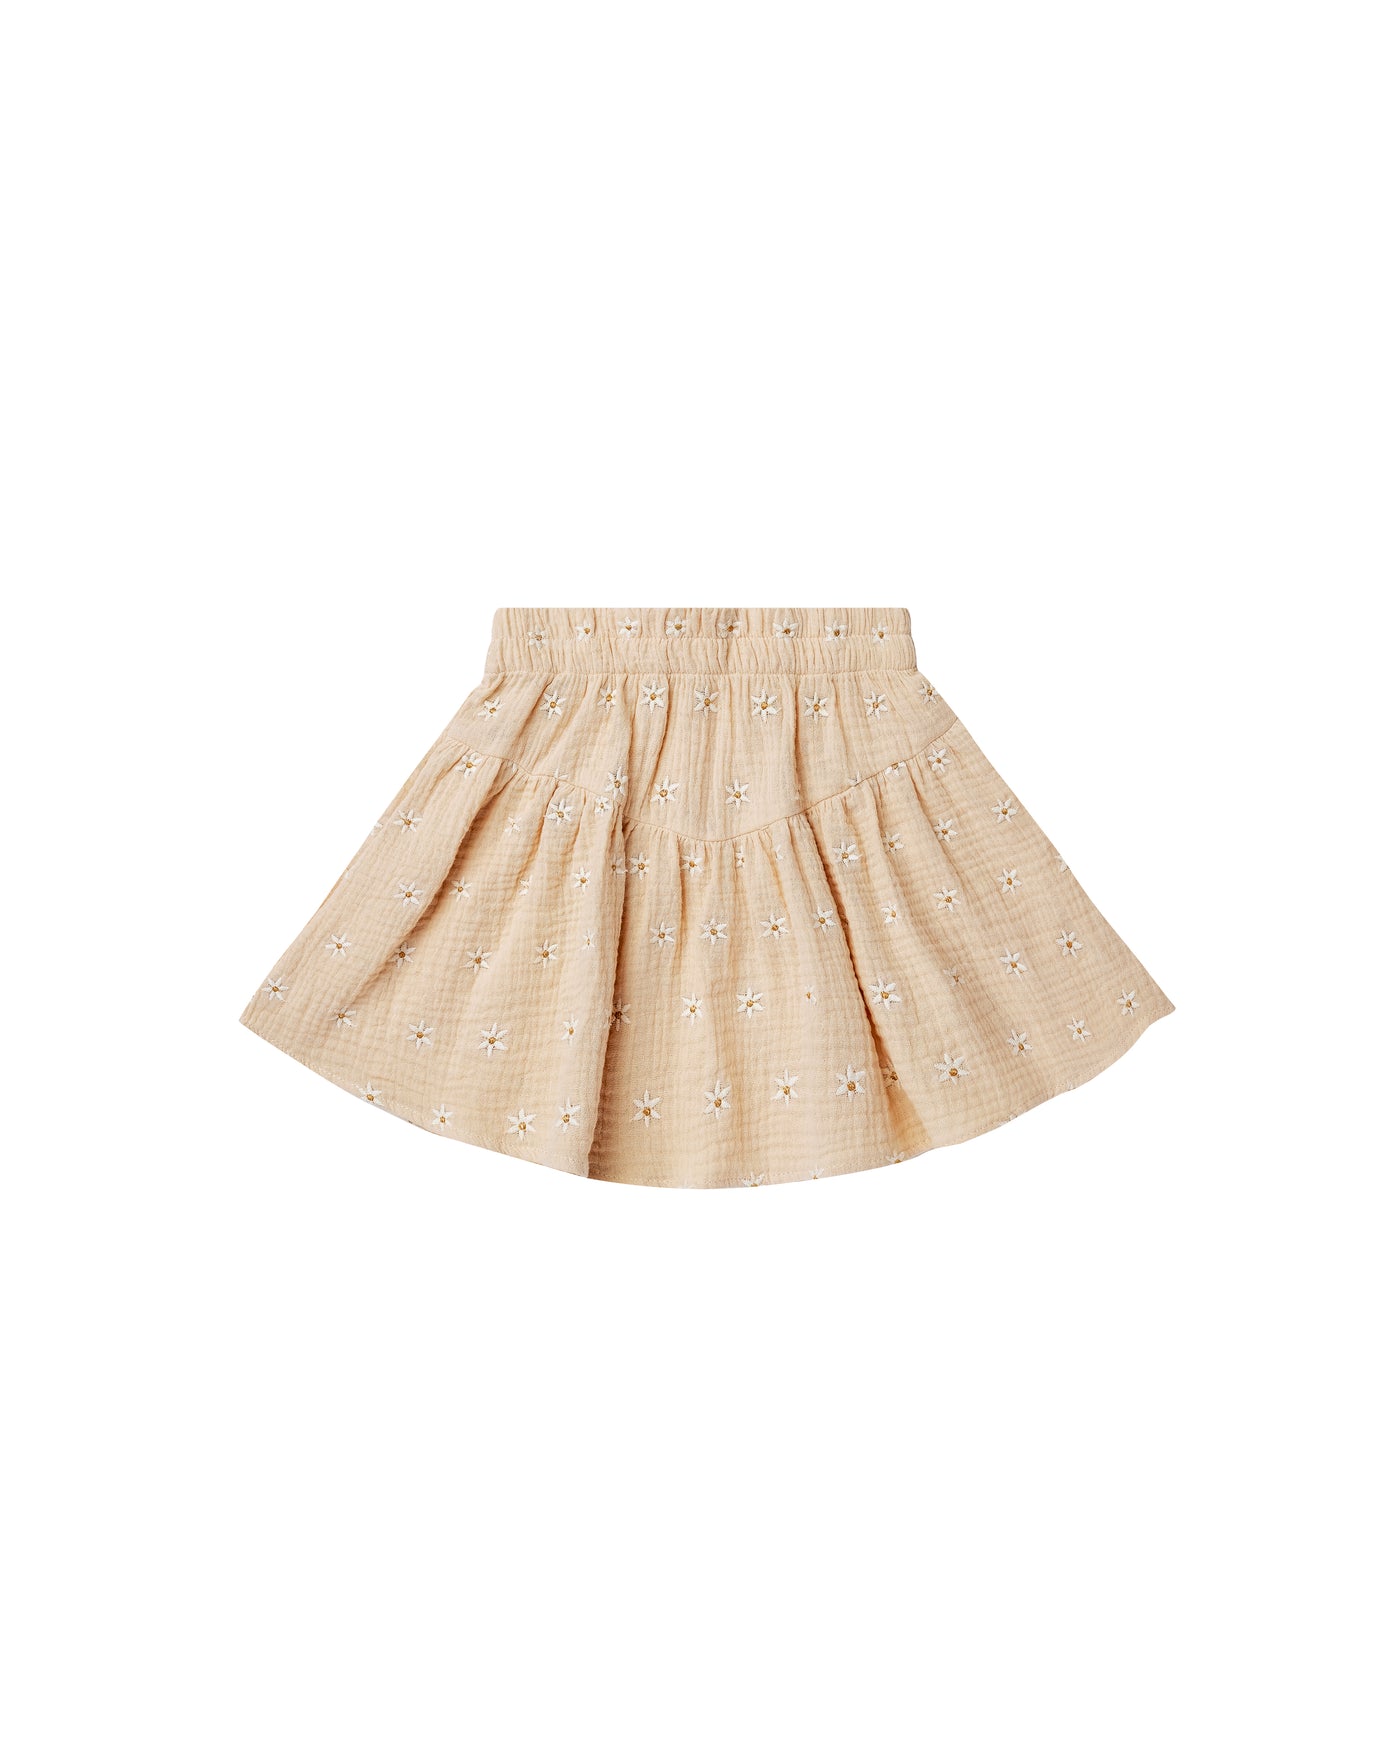 Sparrow Skirt || Daisy Embroidery